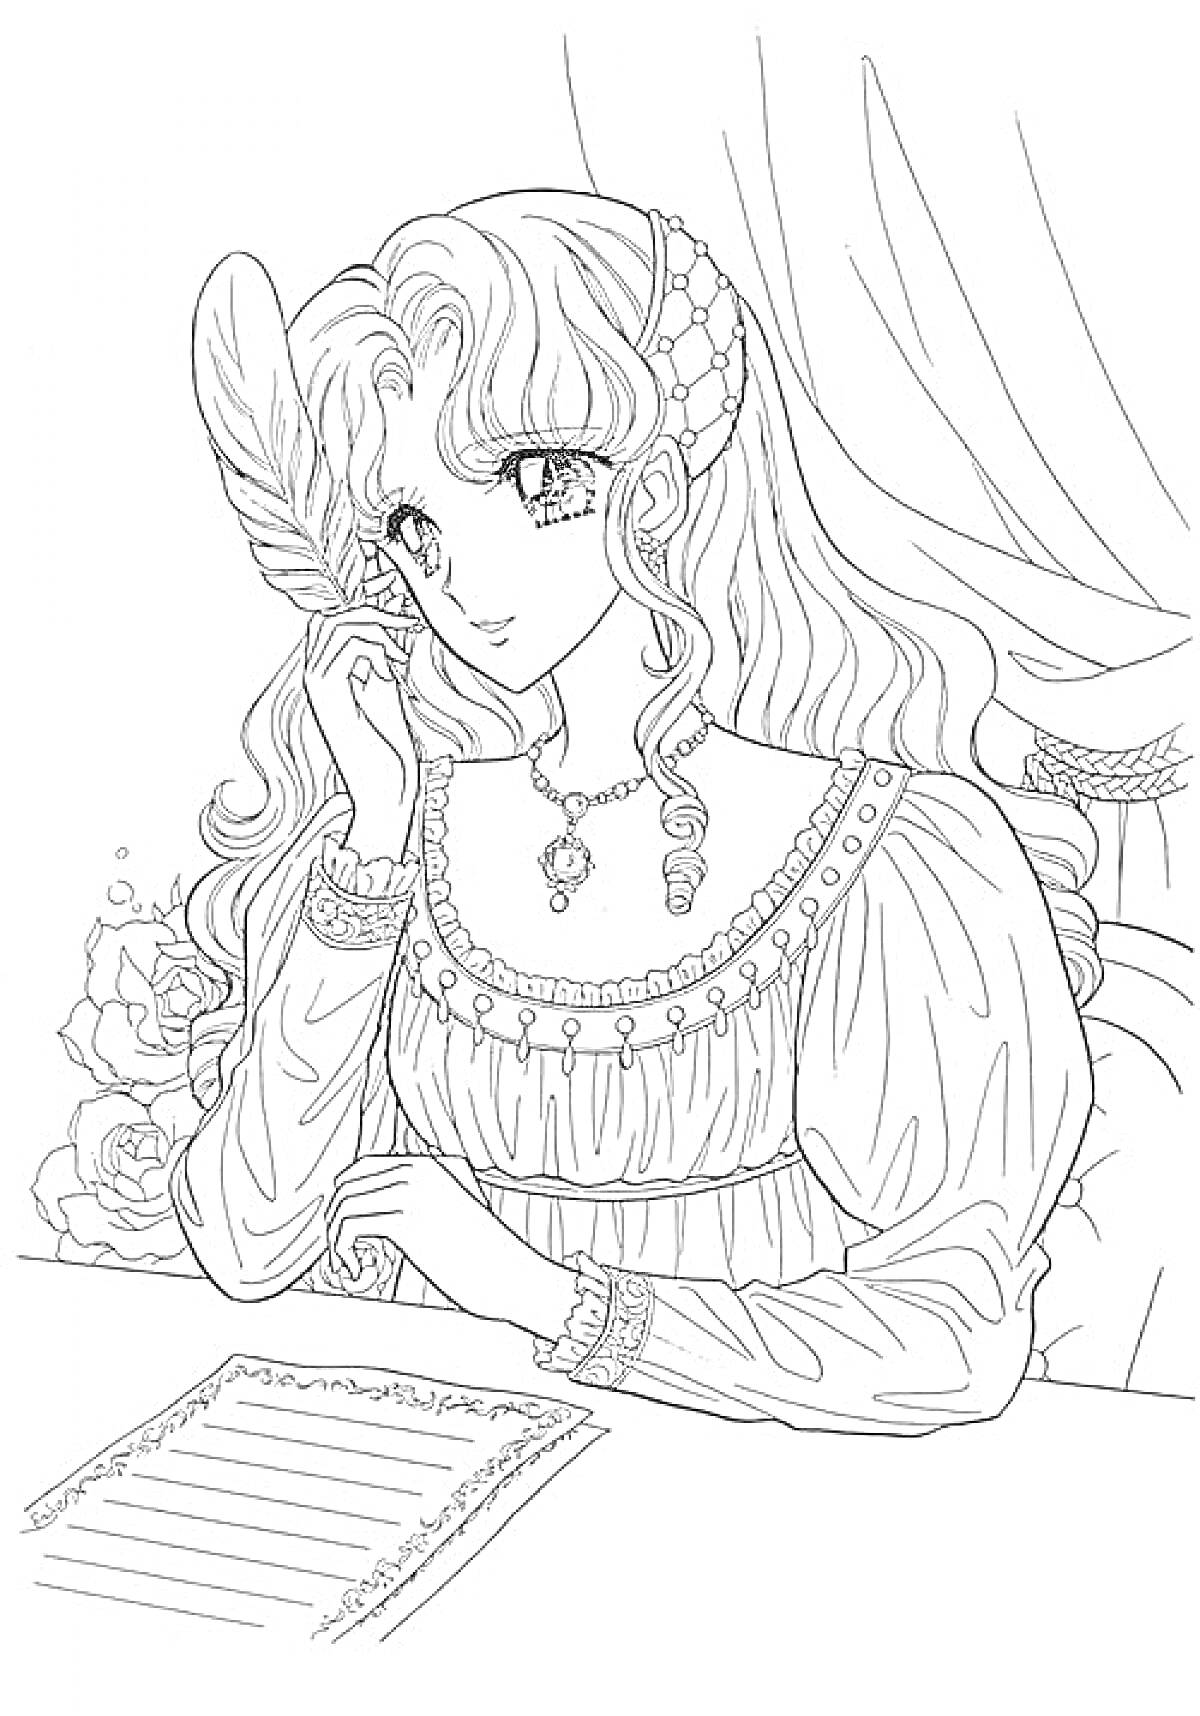 Раскраска Аниме девушка пишет письмо, с длинными волосами, пером в руке, в платье с украшениями, сидящая за столом на фоне занавеса и цветов